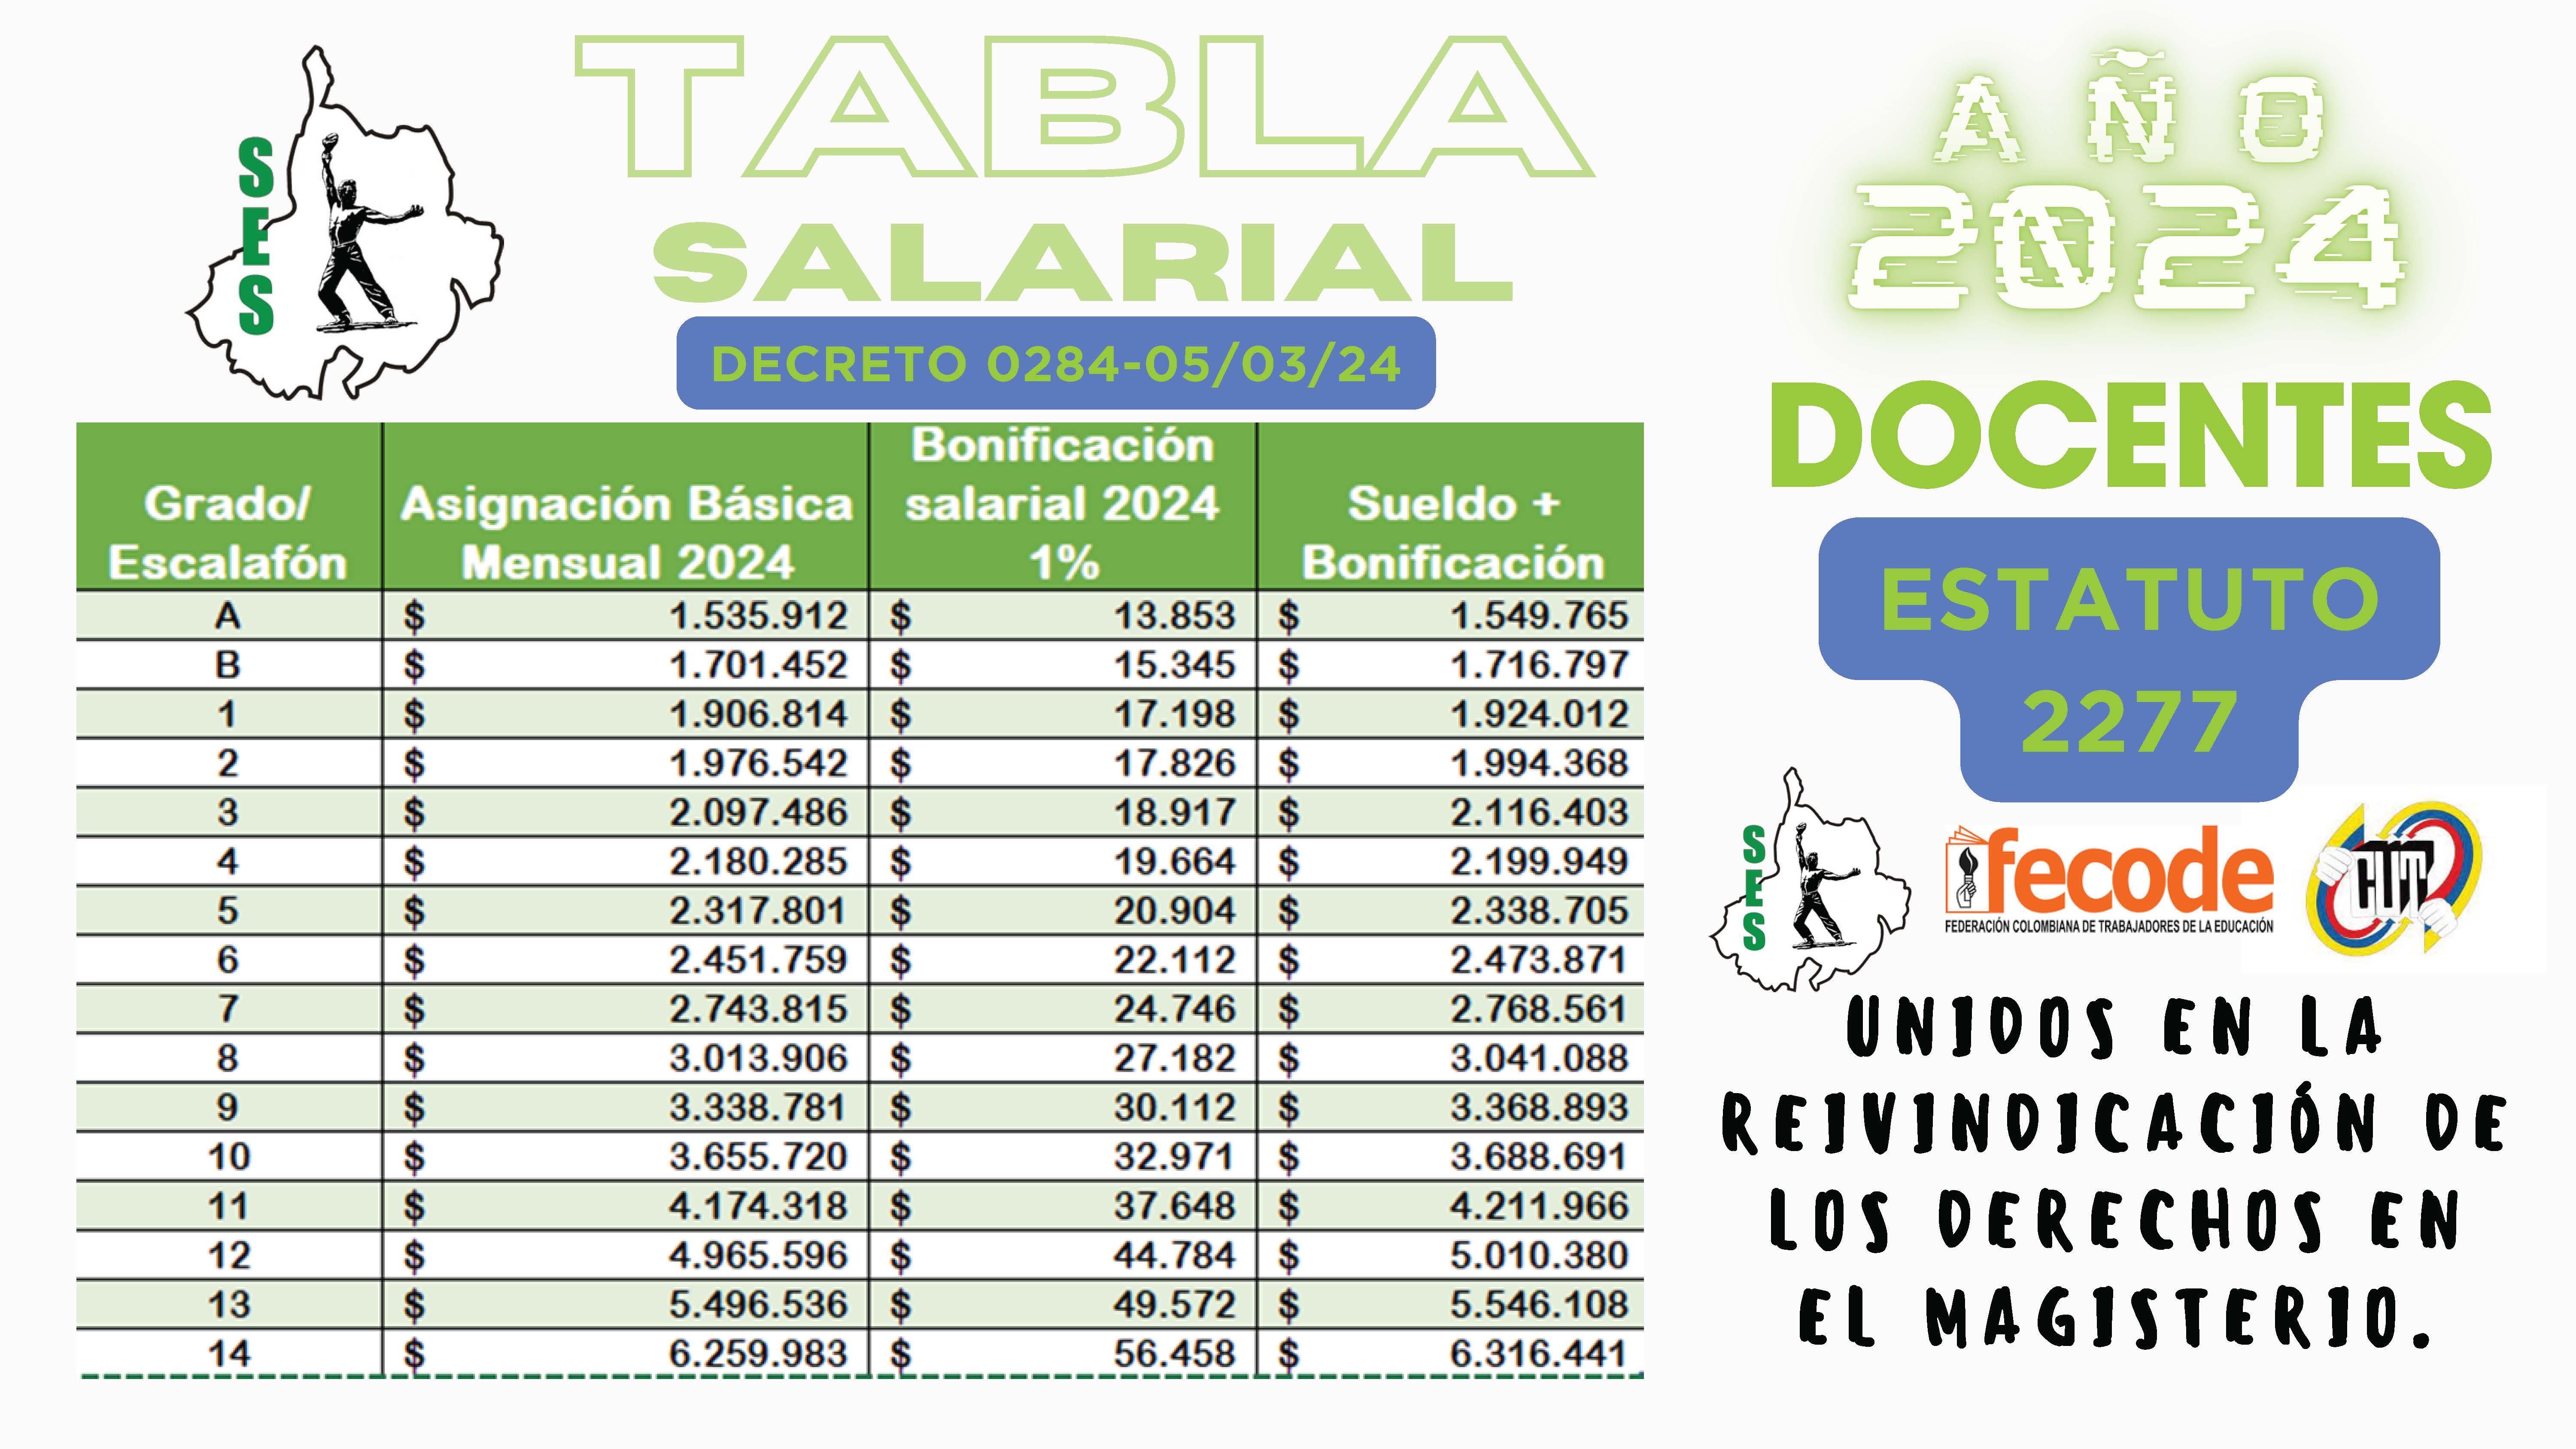 TABLA SALARIAL DOCENTES ESTATUTO 2277 2024